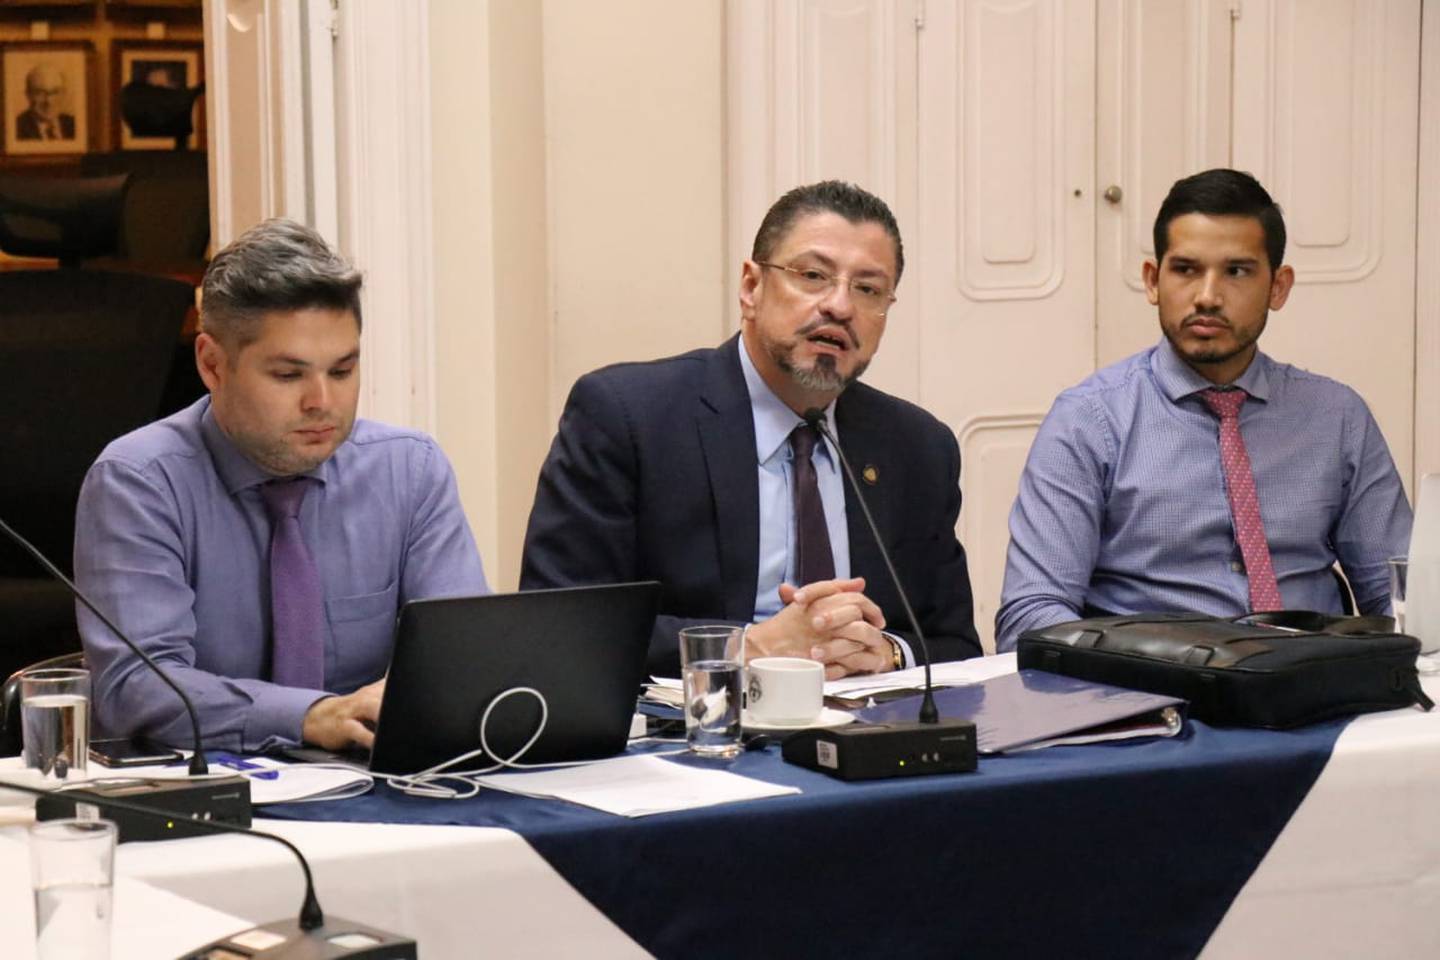 El ministro de Hacienda, Rodrigo Chaves, tuvo una serie de reuniones con los diputados este martes, para discutir los proyectos del gobierno para paliar los efectos del covid-19. Foto: Aarón Sequeira.